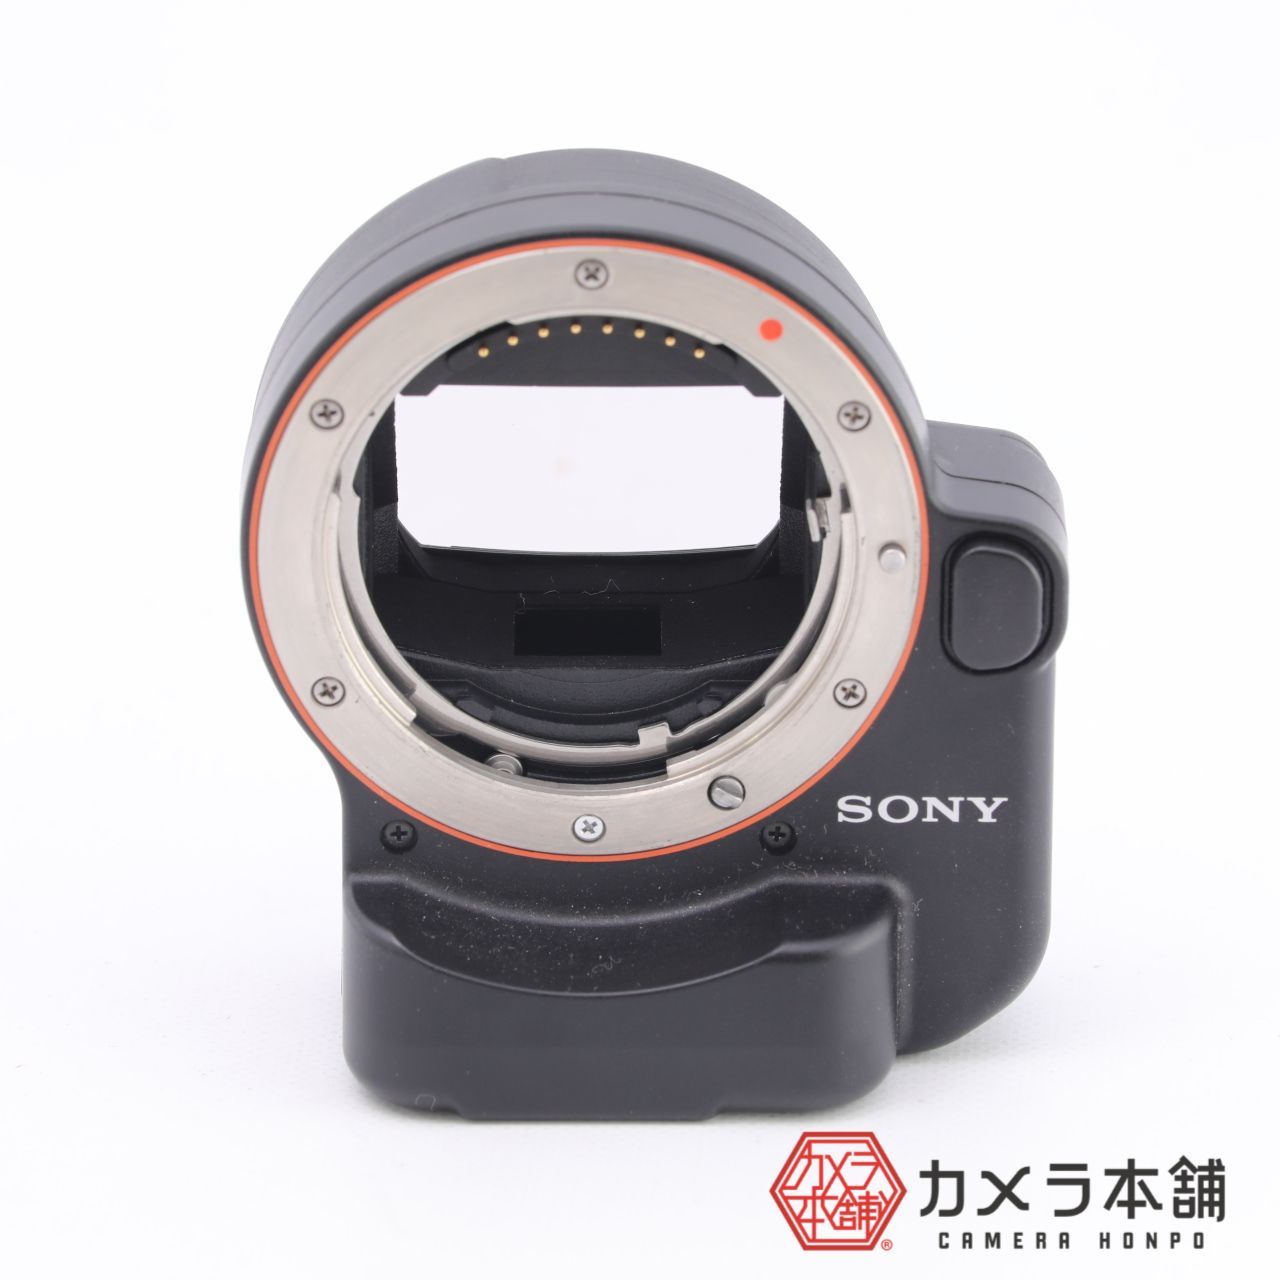 SONY ソニー マウントアダプター LA-EA4 35mmフルサイズ対応 カメラ本舗｜Camera honpo メルカリ